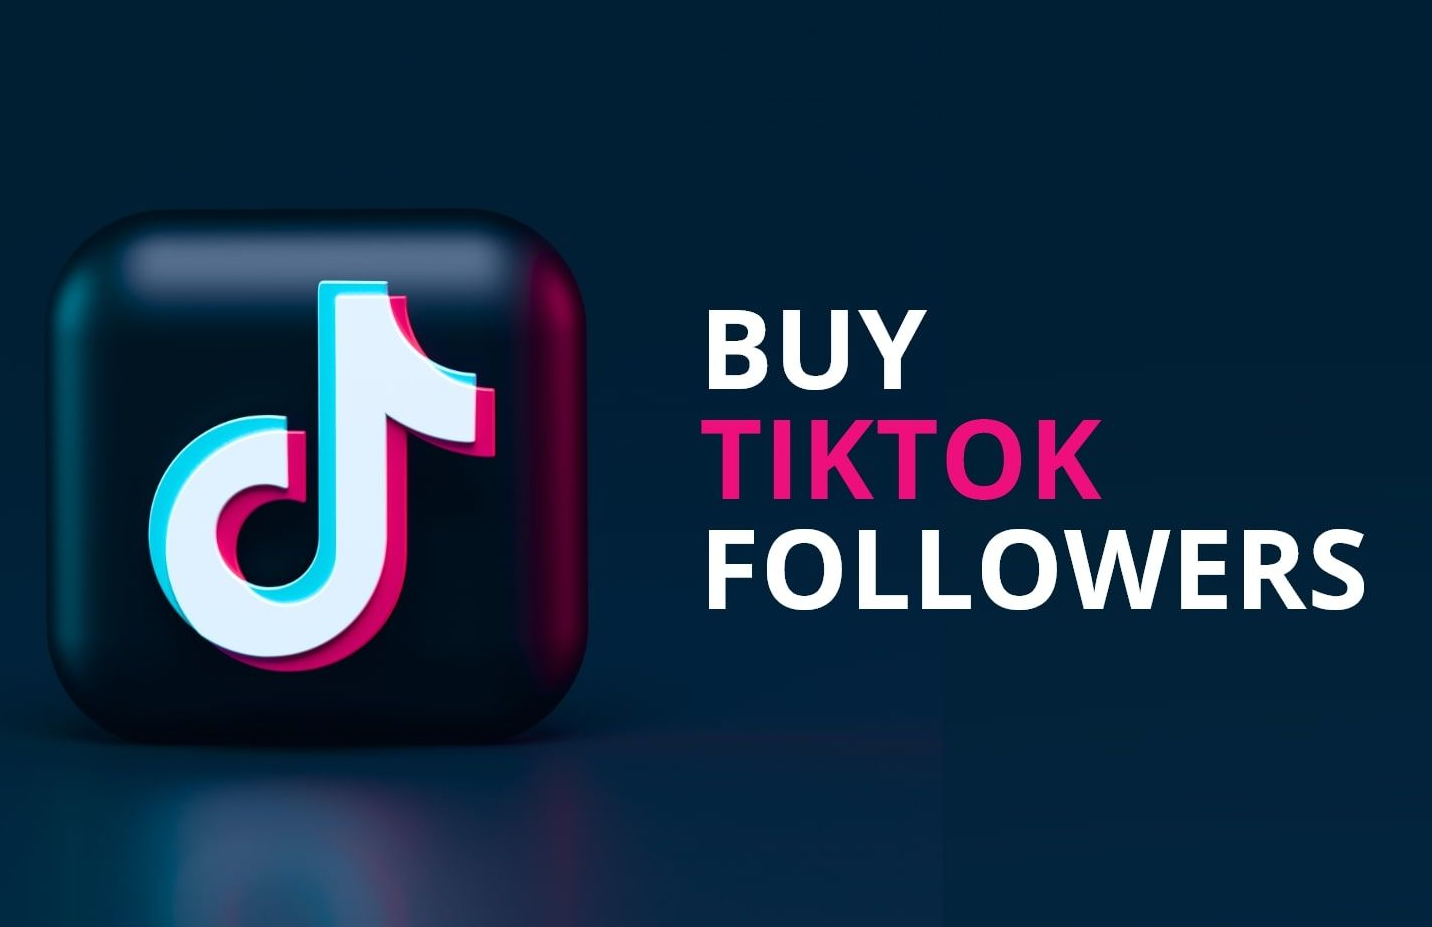 Reasons to Buy TikTok Followers